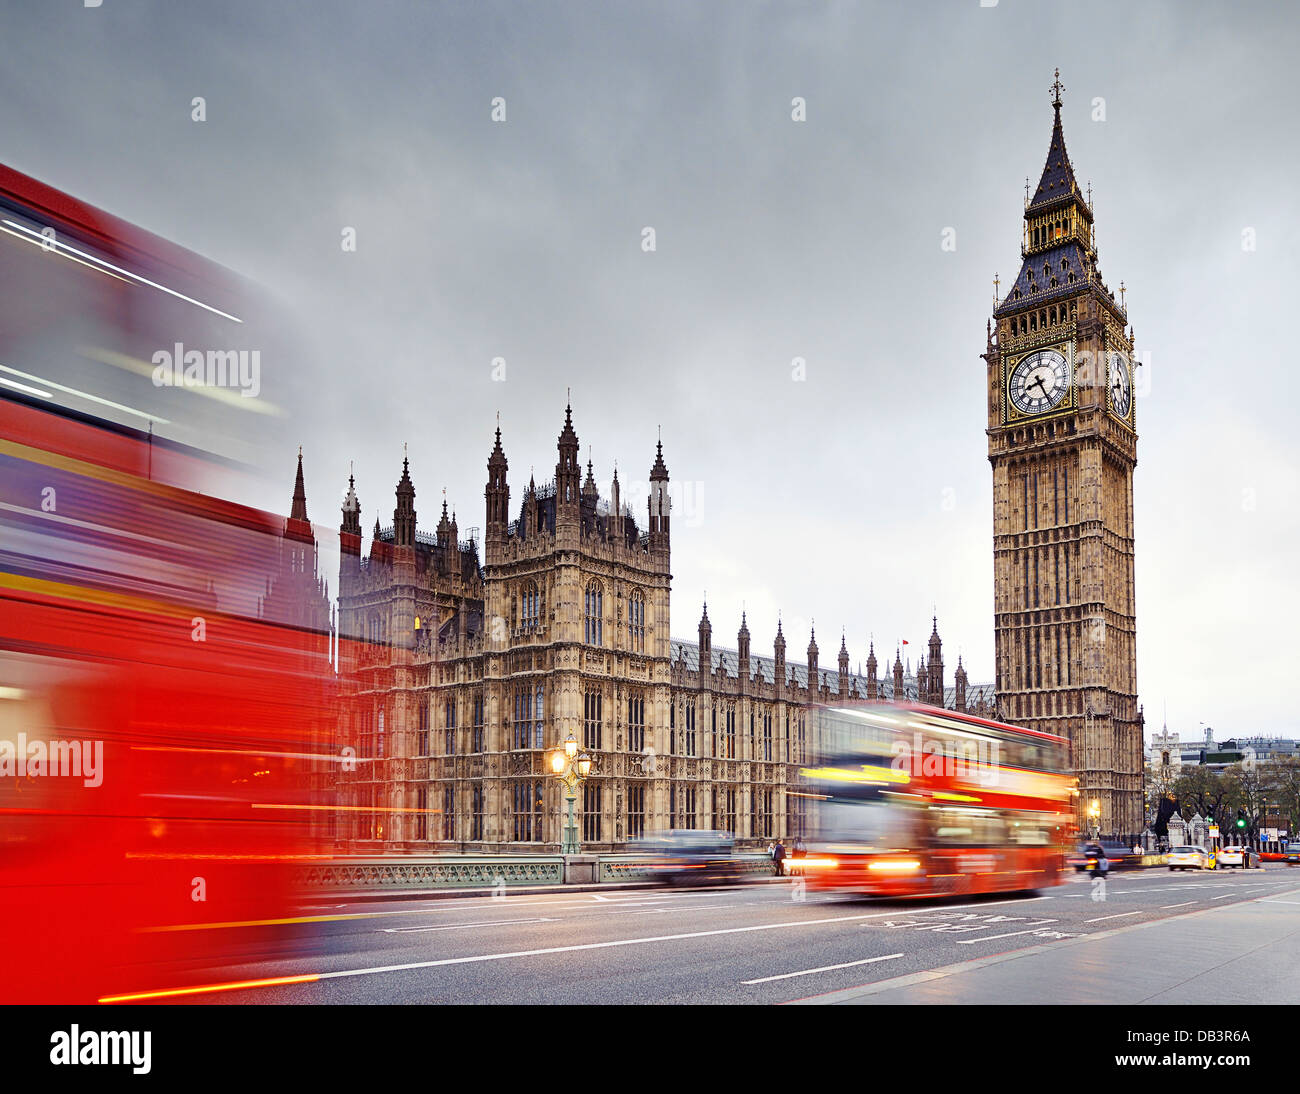 Londres, Big Ben et les chambres du Parlement de Westminster Bridge. Angleterre, Royaume-Uni. Banque D'Images